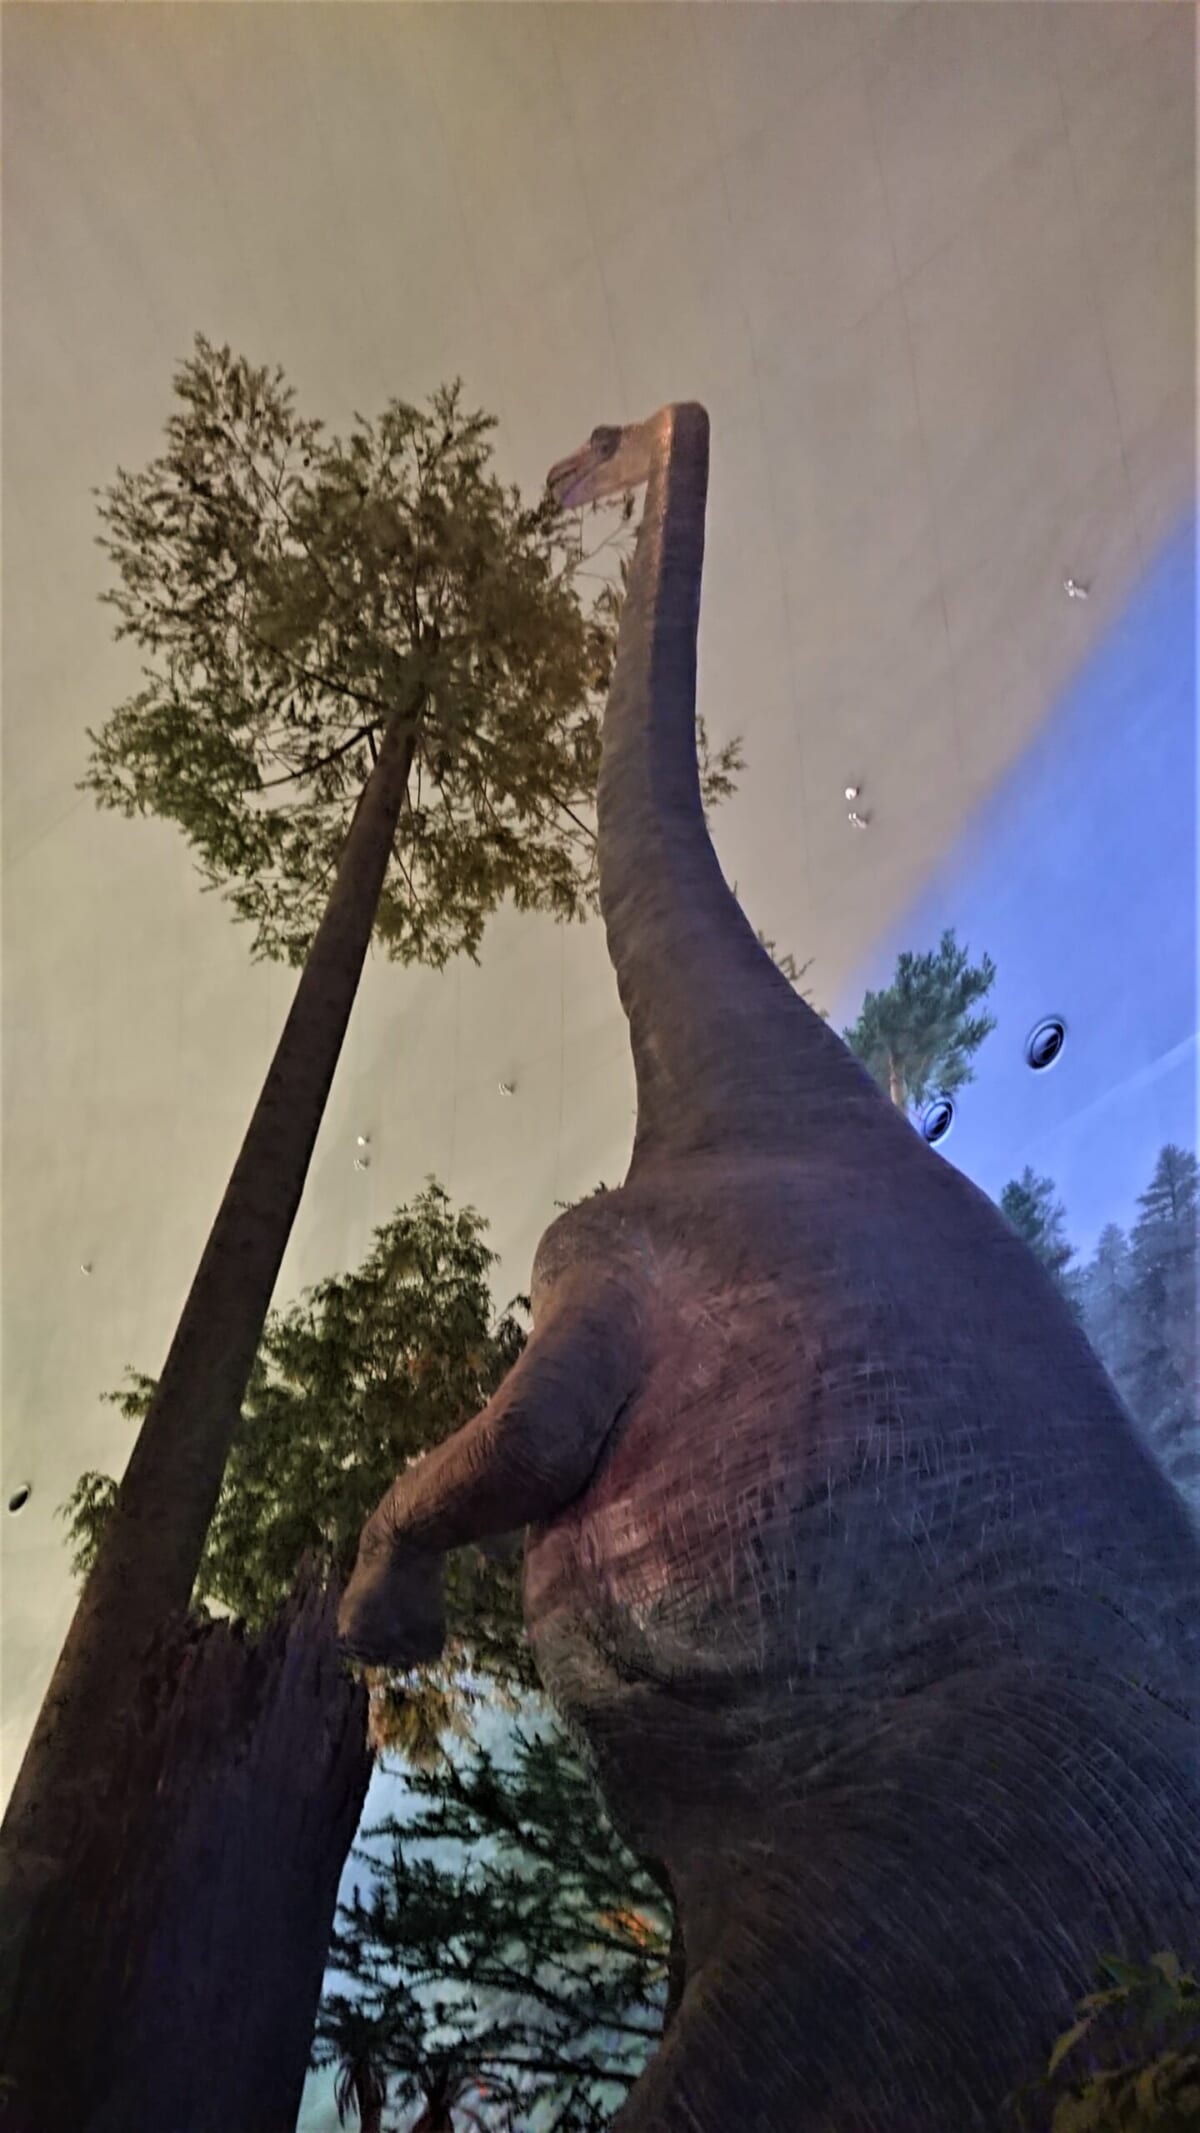 とにかく大きい恐竜たち。「 見上げるのがとても楽しかった。大きいって素晴らしいなあ」。 